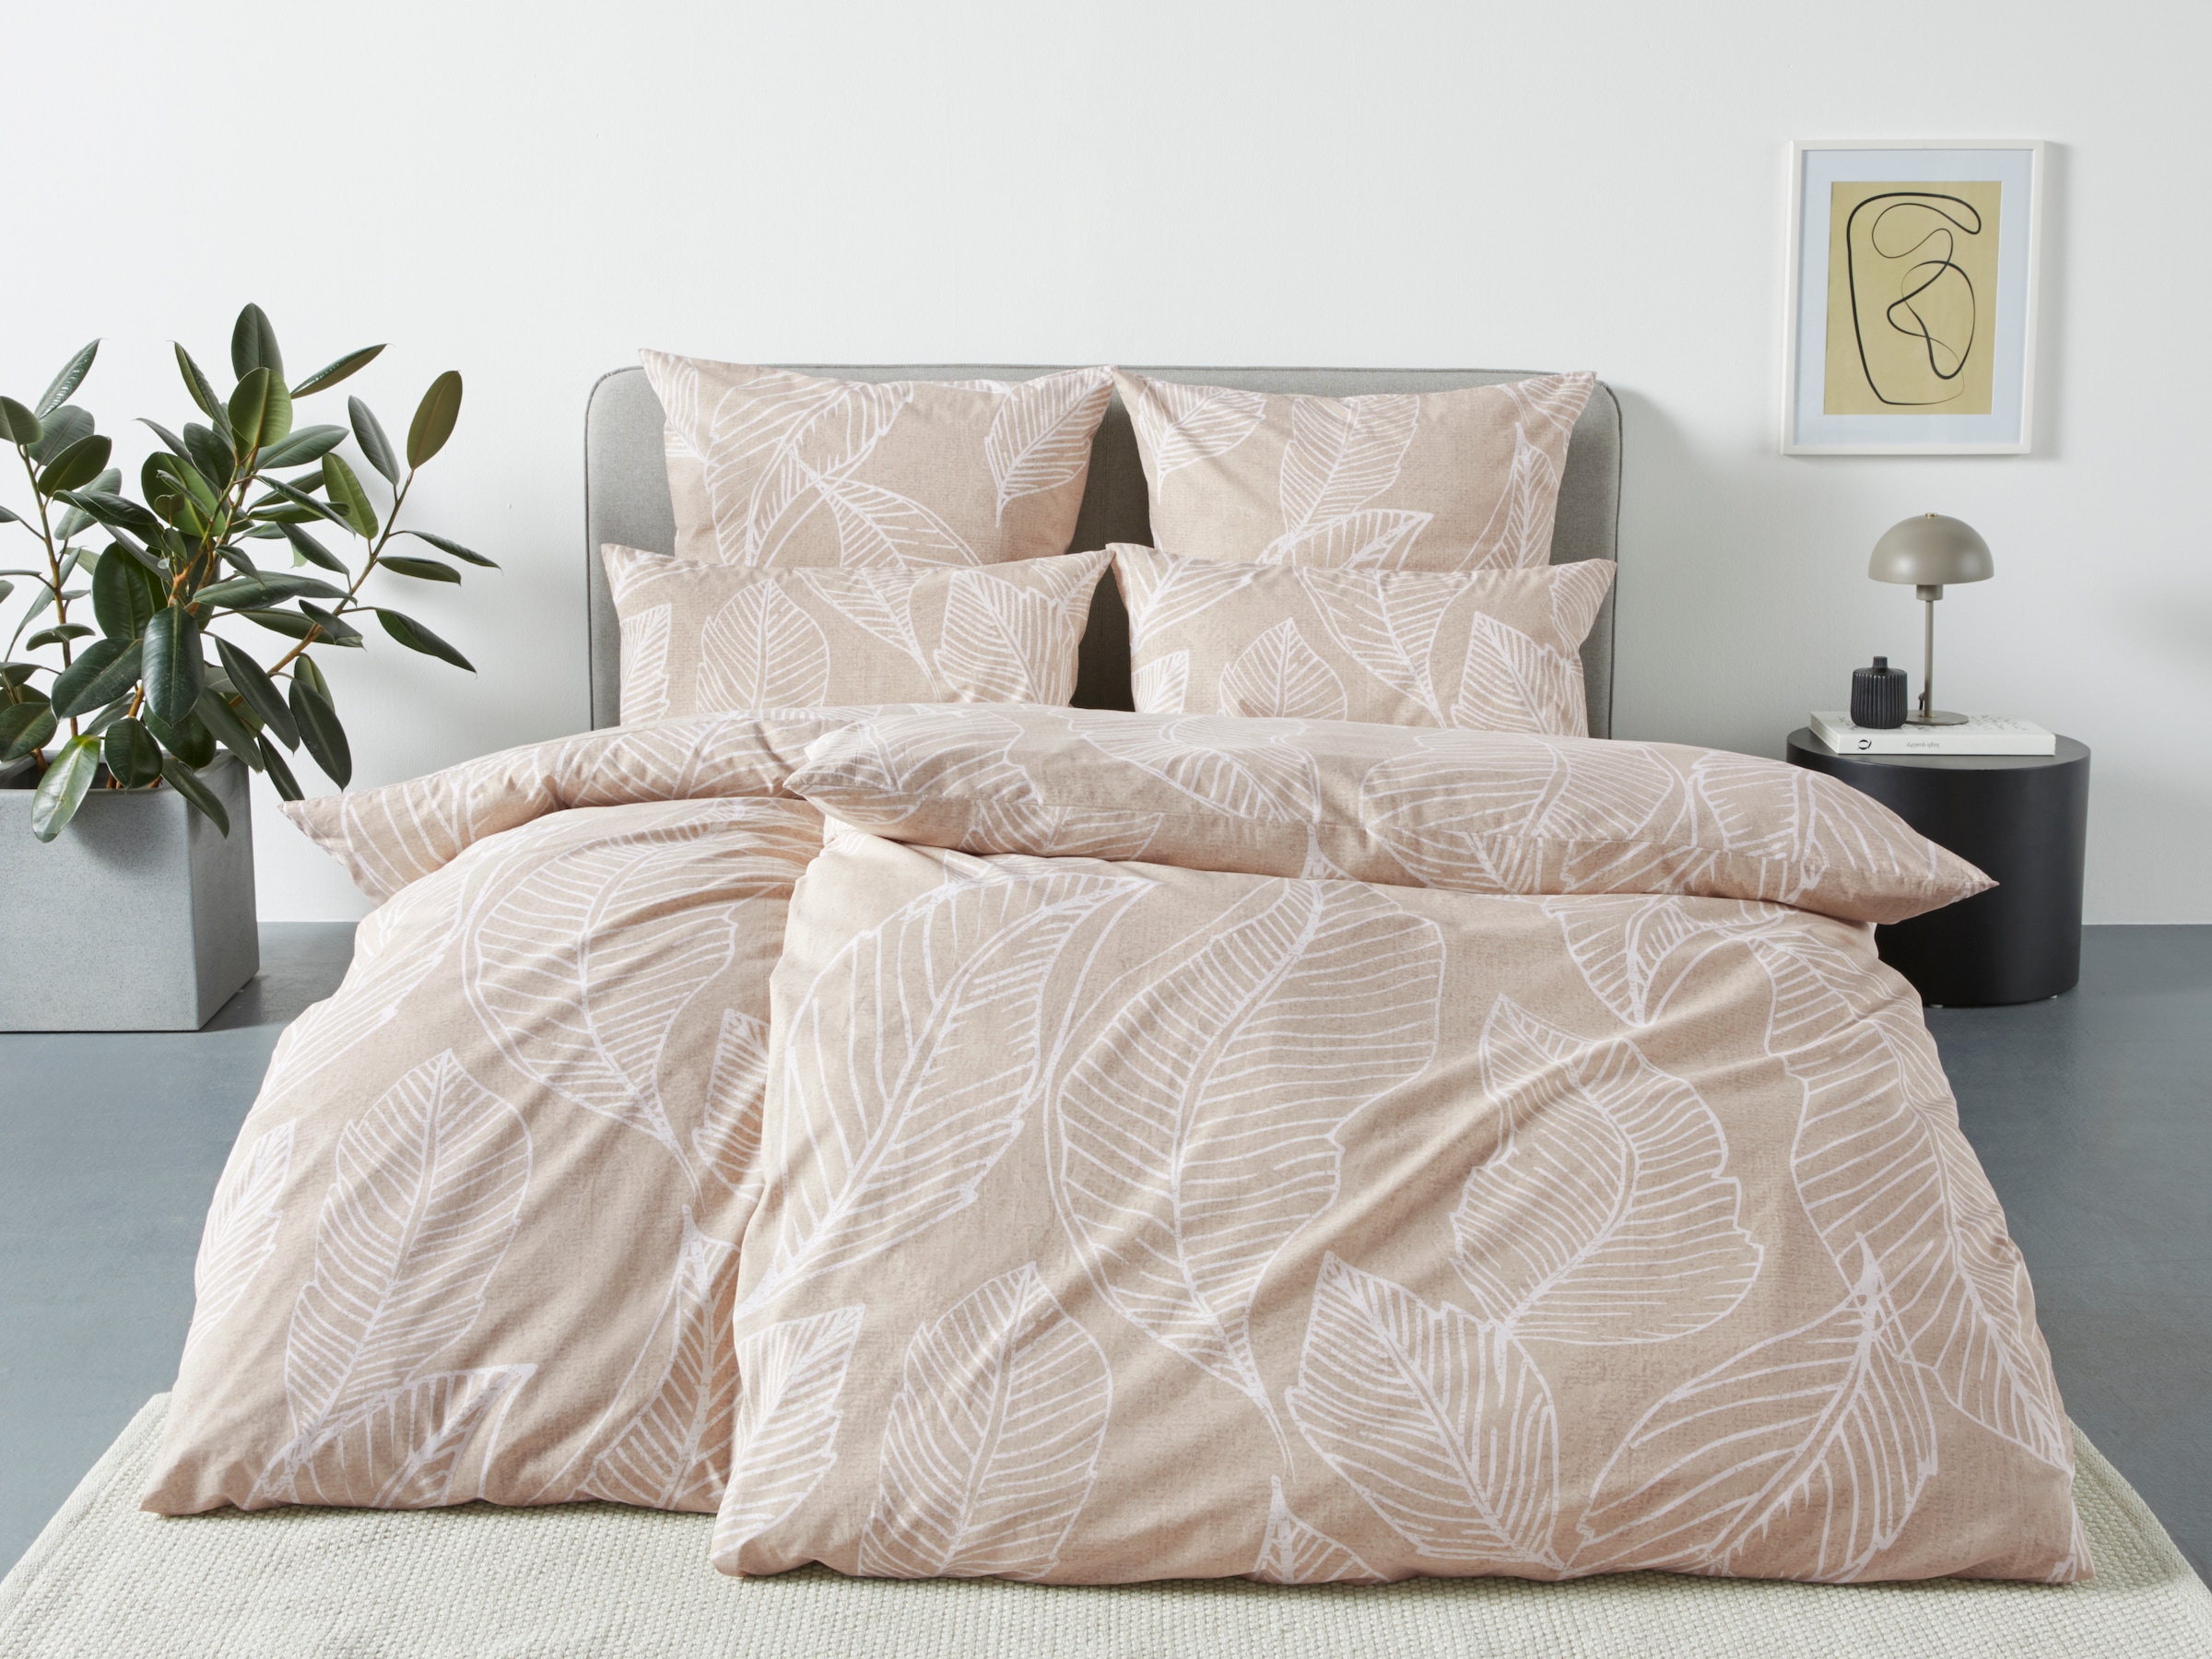 OTTO products Bettwäsche »Jonna in Gr. 135x200 oder 155x220 cm«, (2 tlg.), Bettwäsche aus Bio-Baumwolle, Bettwäsche mit natürlichem Design